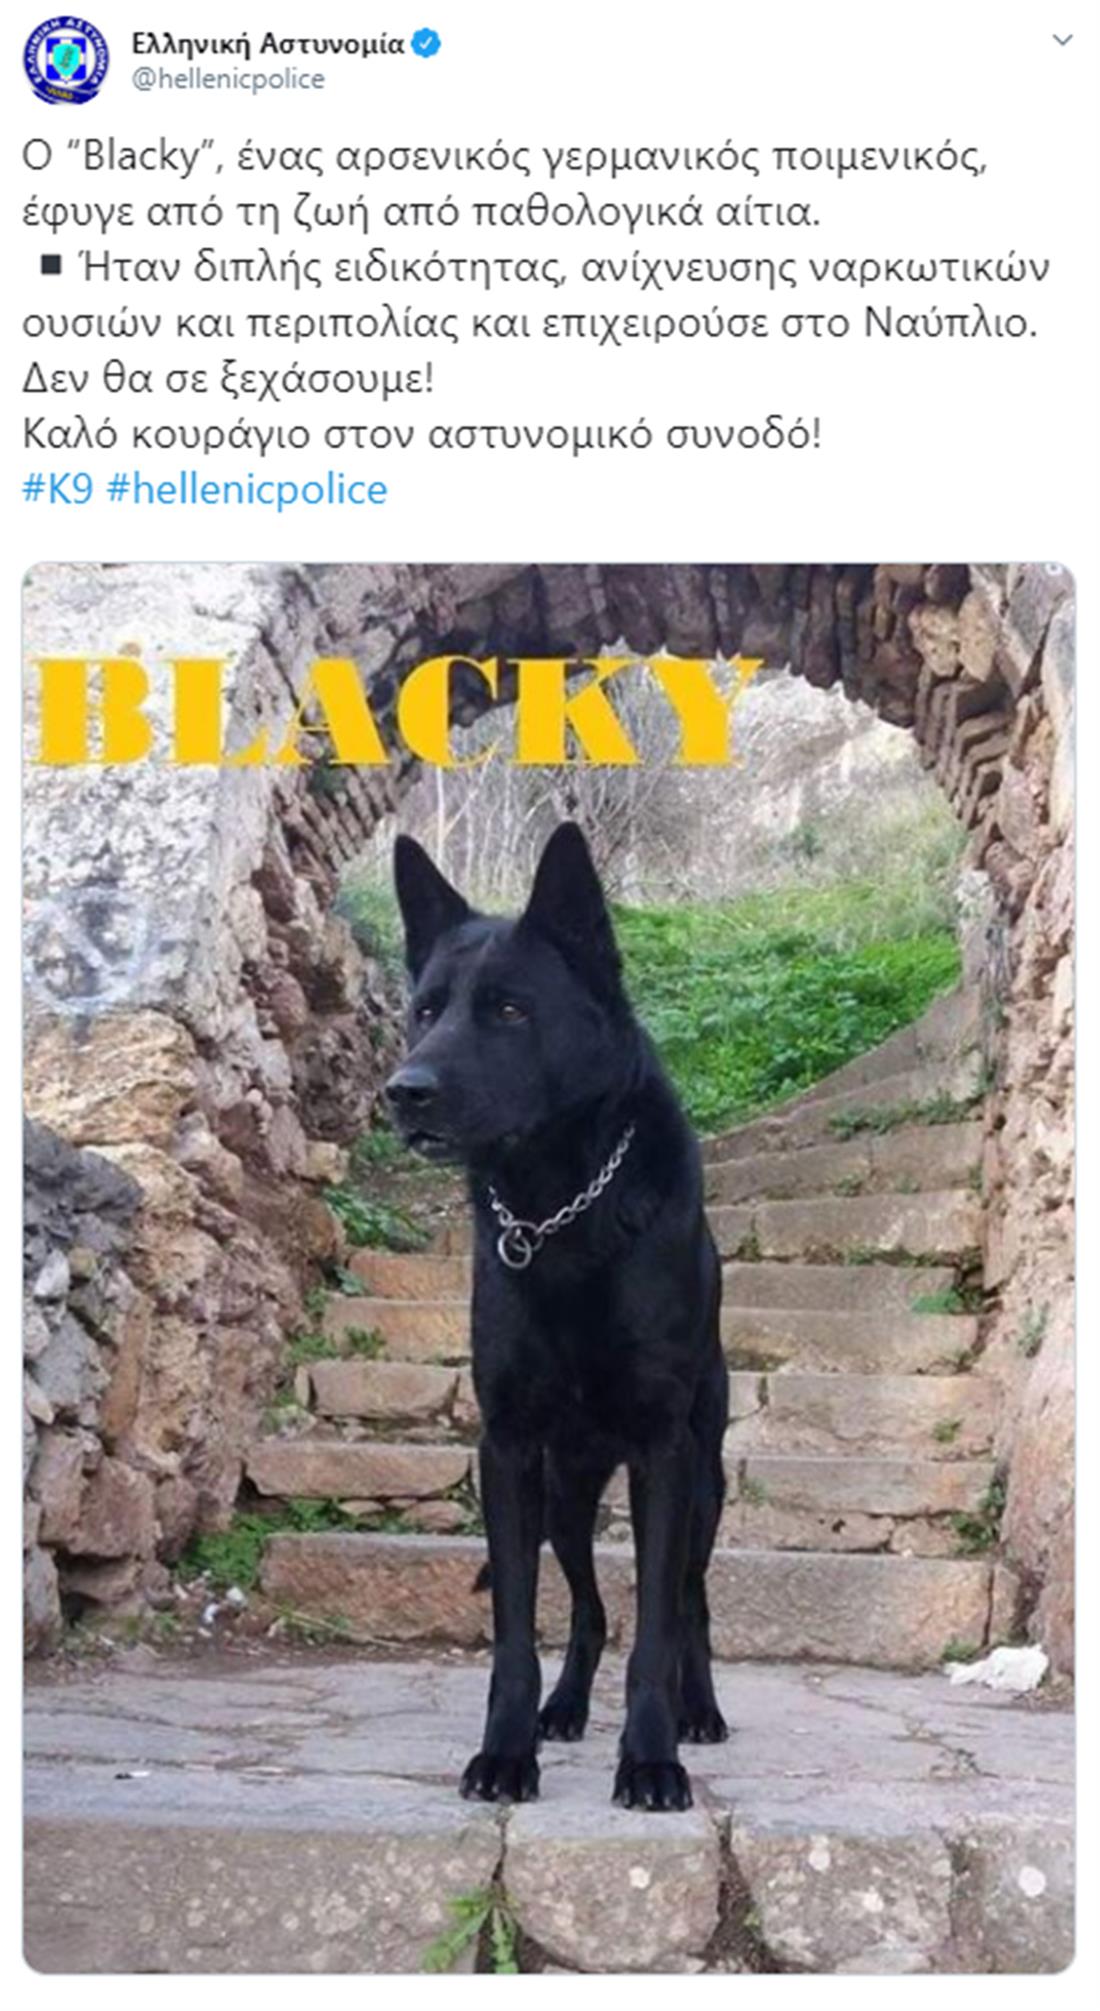 Ελληνική Αστυνομία - Blacky